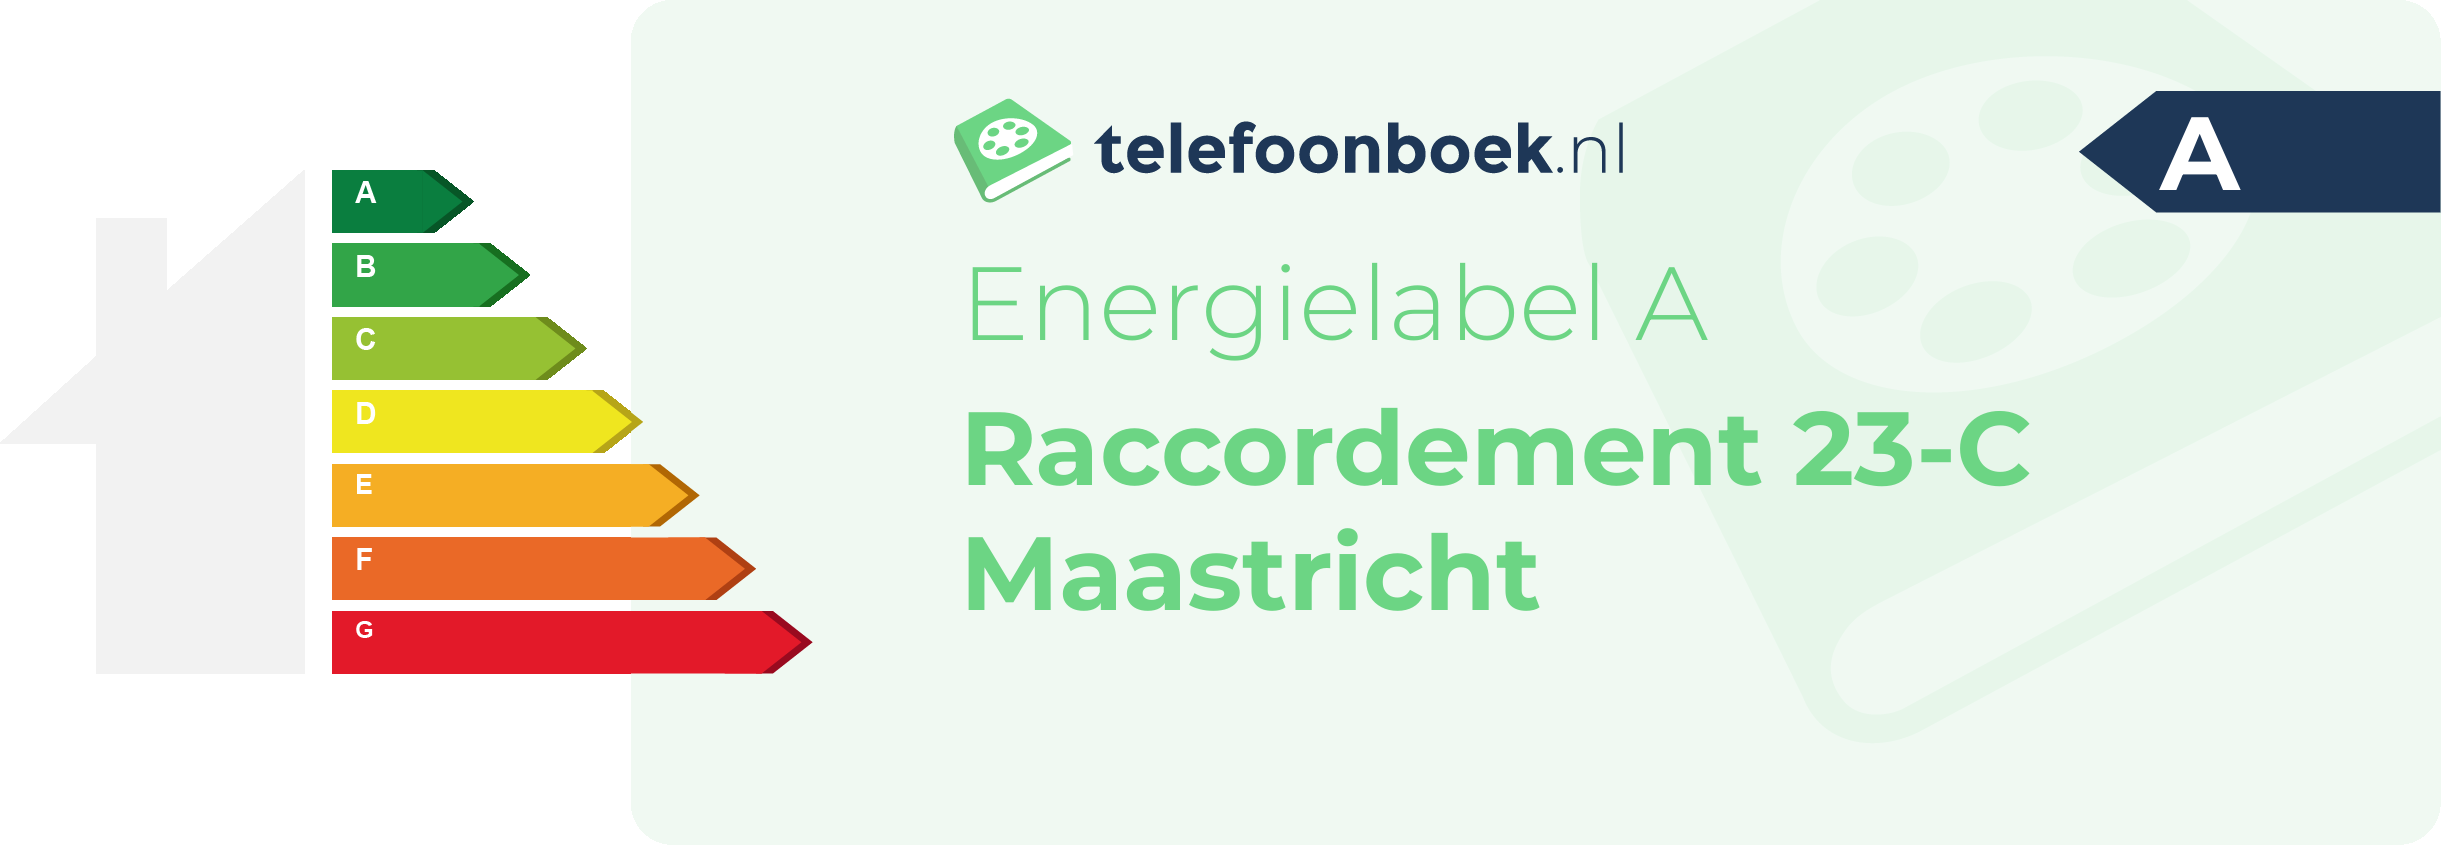 Energielabel Raccordement 23-C Maastricht